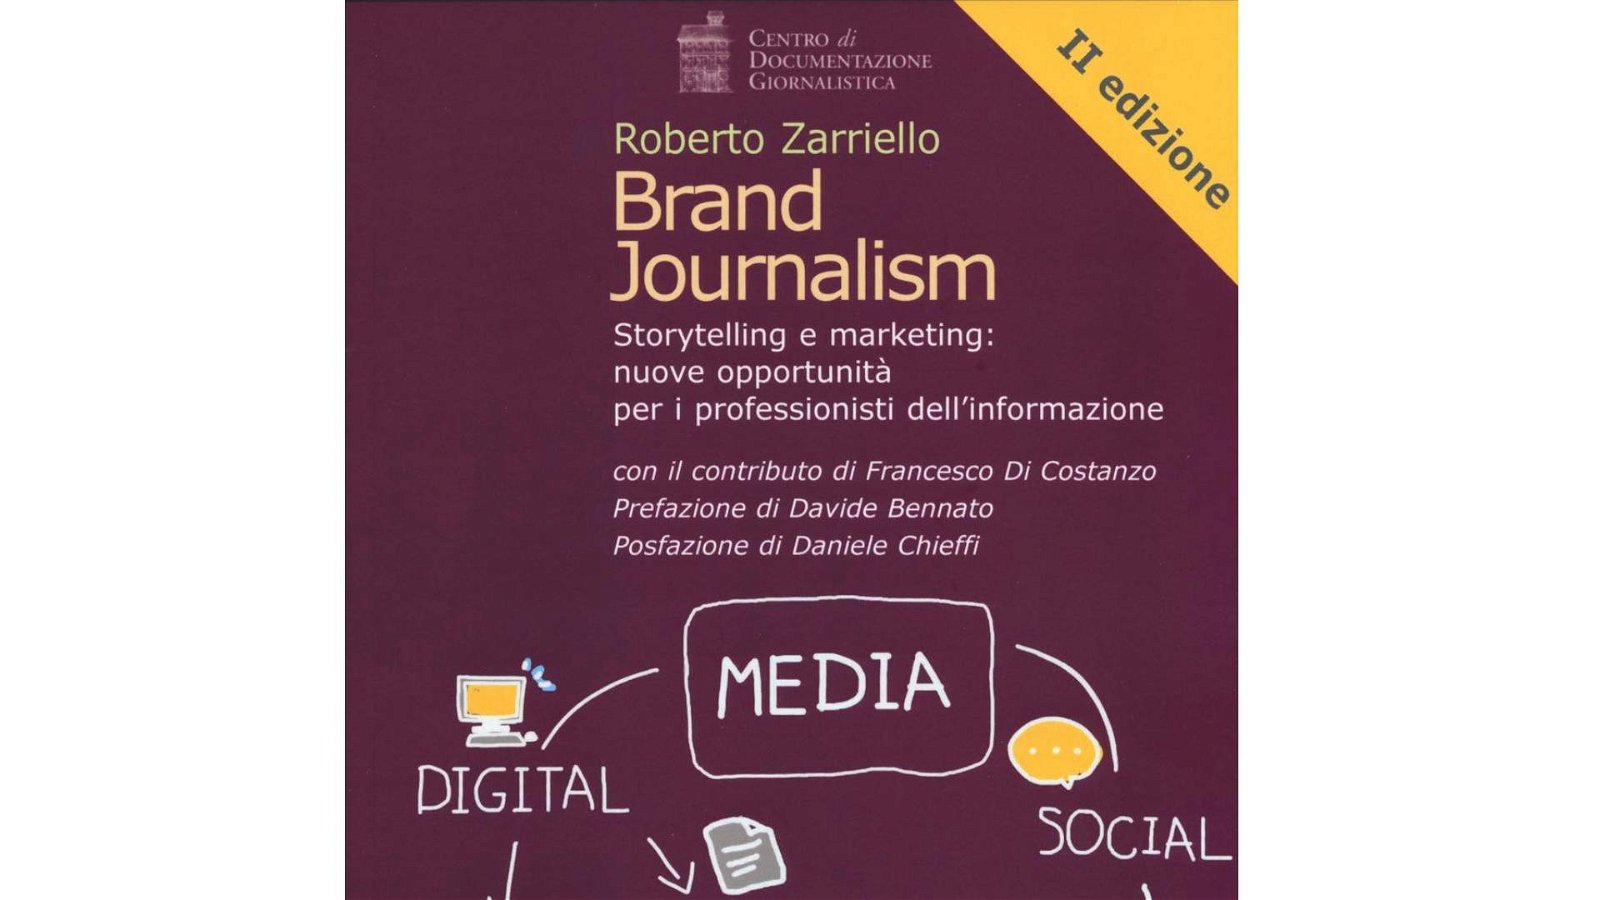 Immagine di "Brand Journalism" di Roberto Zarriello: se parli di un marchio non tradire i principi di verità